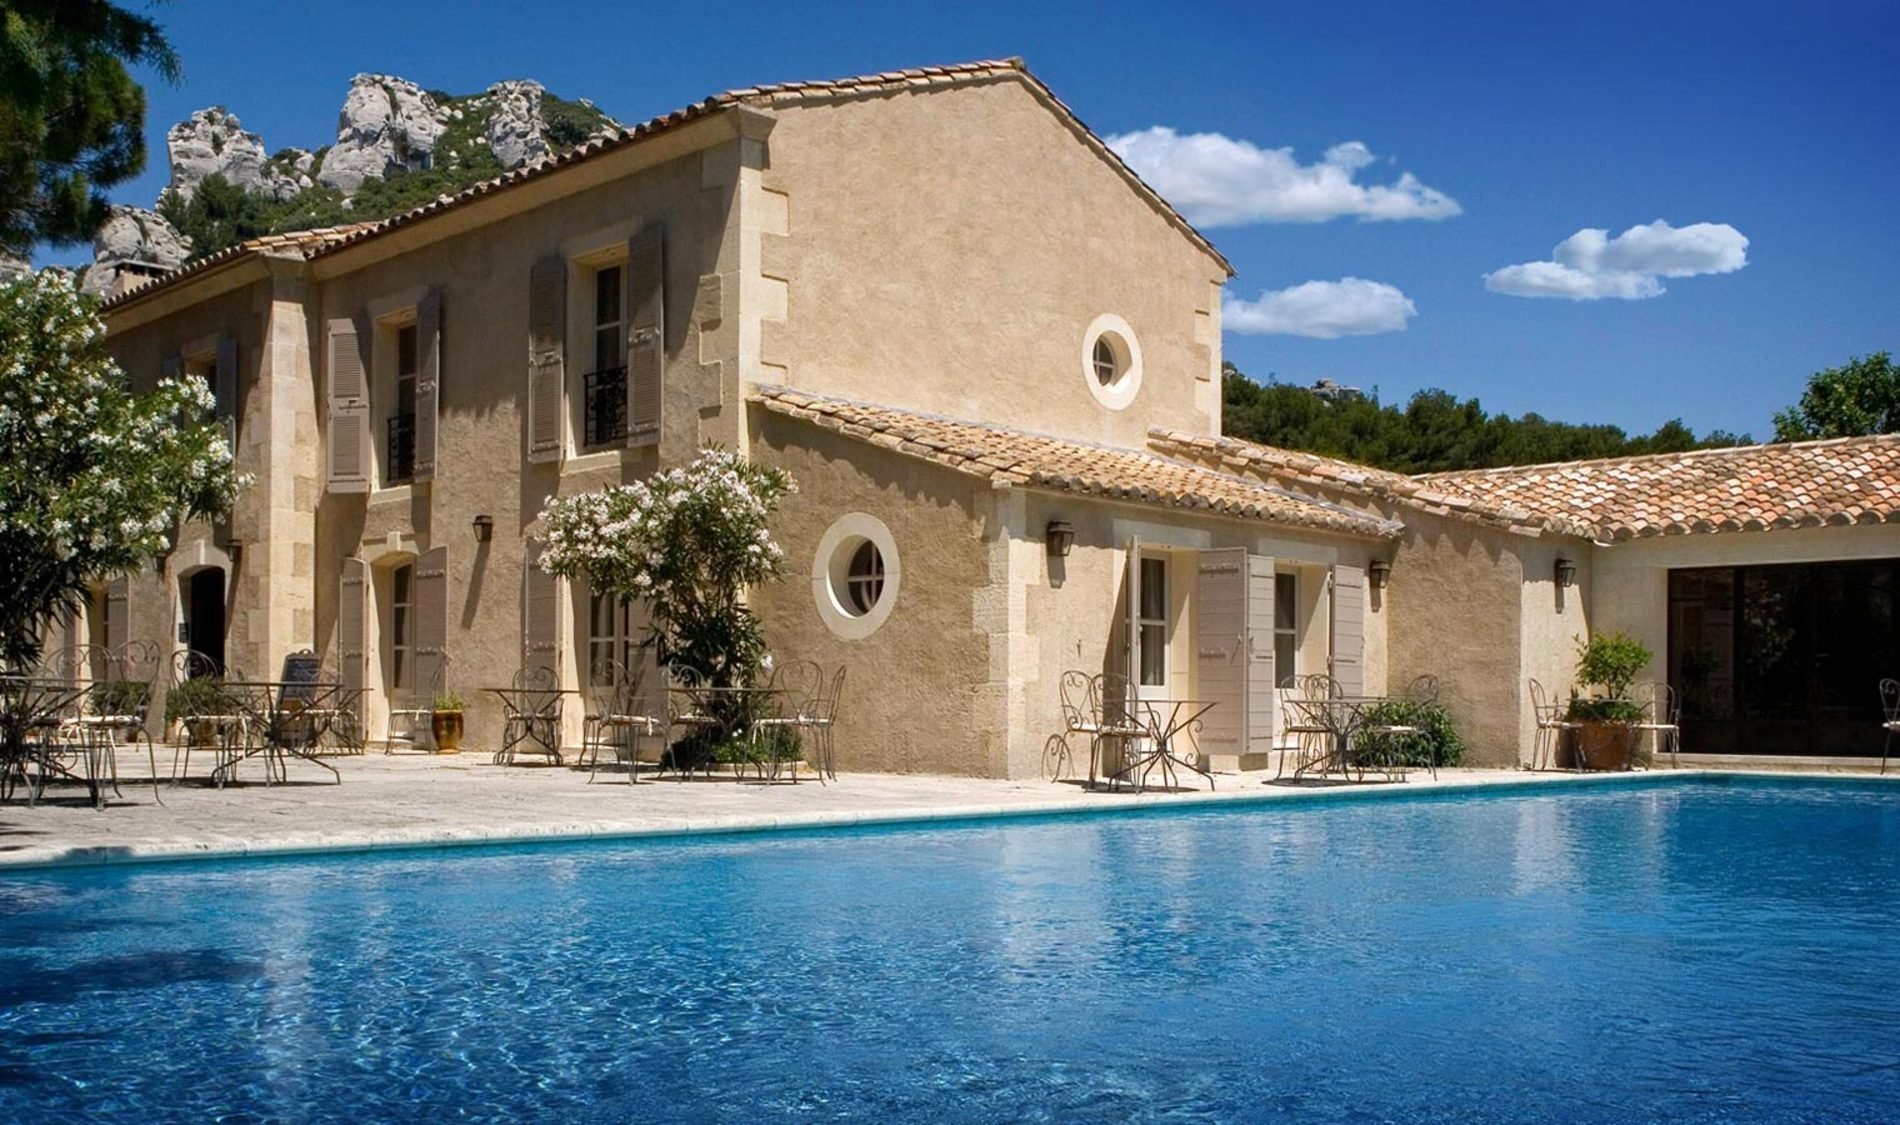 Luxury boutique hotel Benvengudo 4* Les Baux-de-Provence France authentic traditional hotel